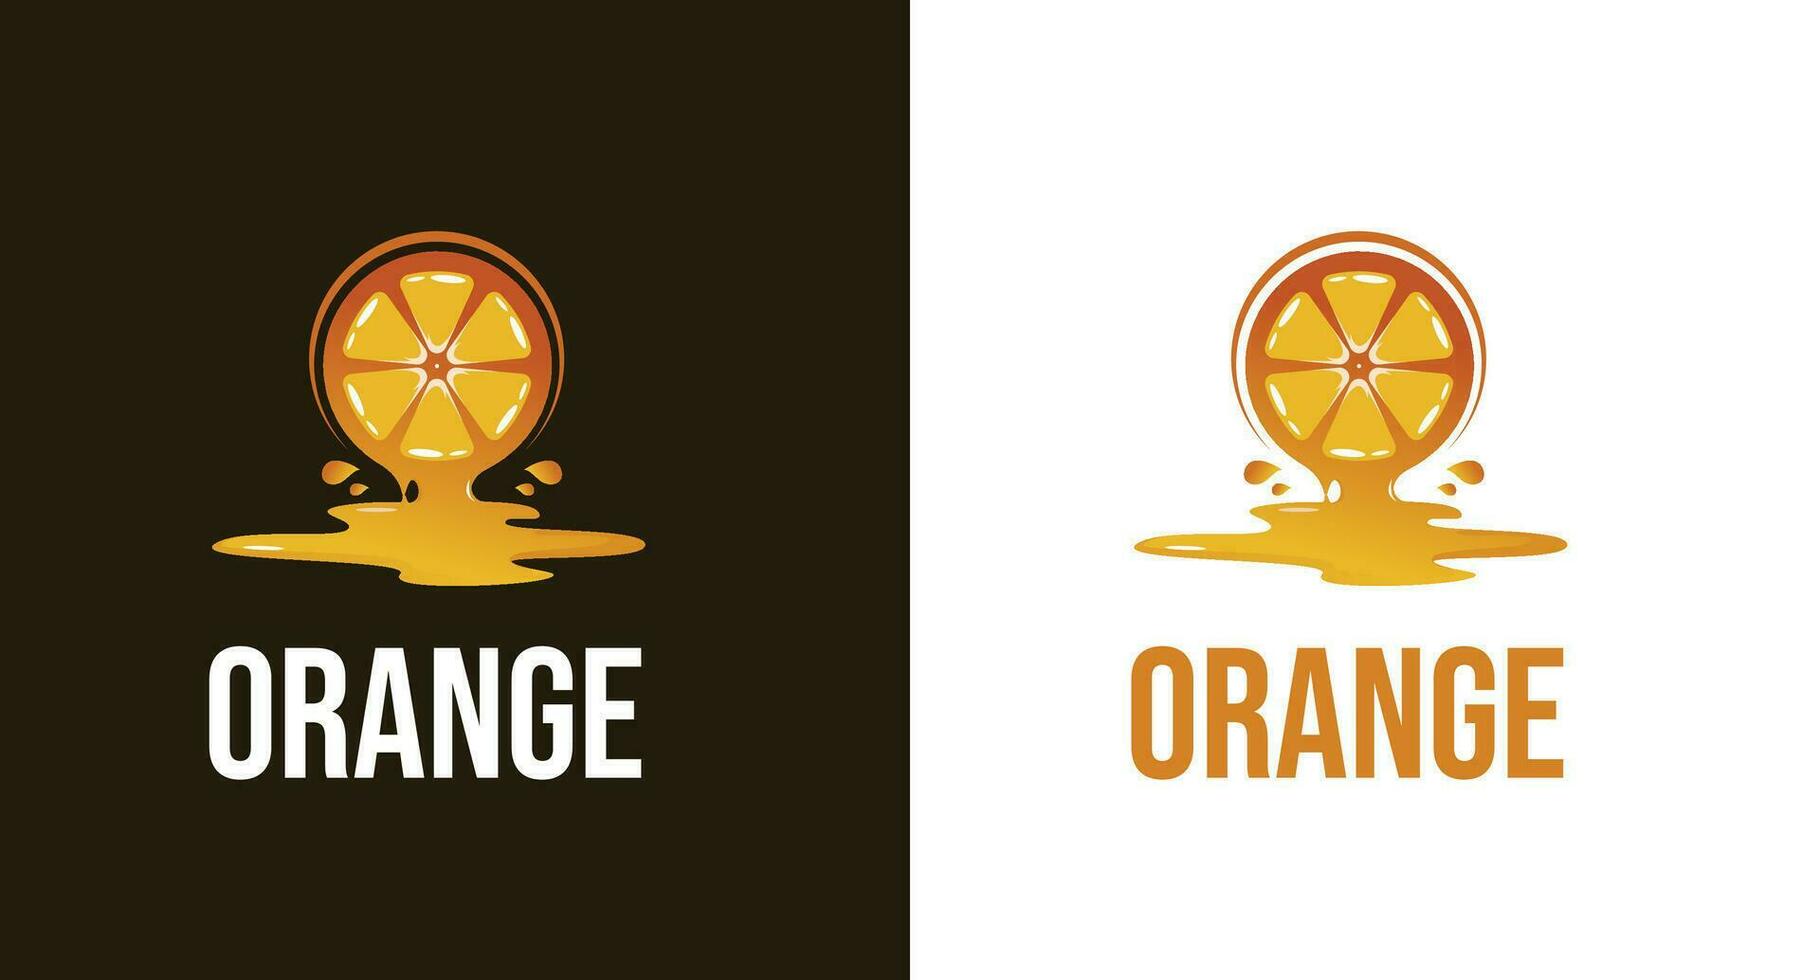 orange juice illustration - orange juice splash illustration - juice logo - fresh juice logo vector